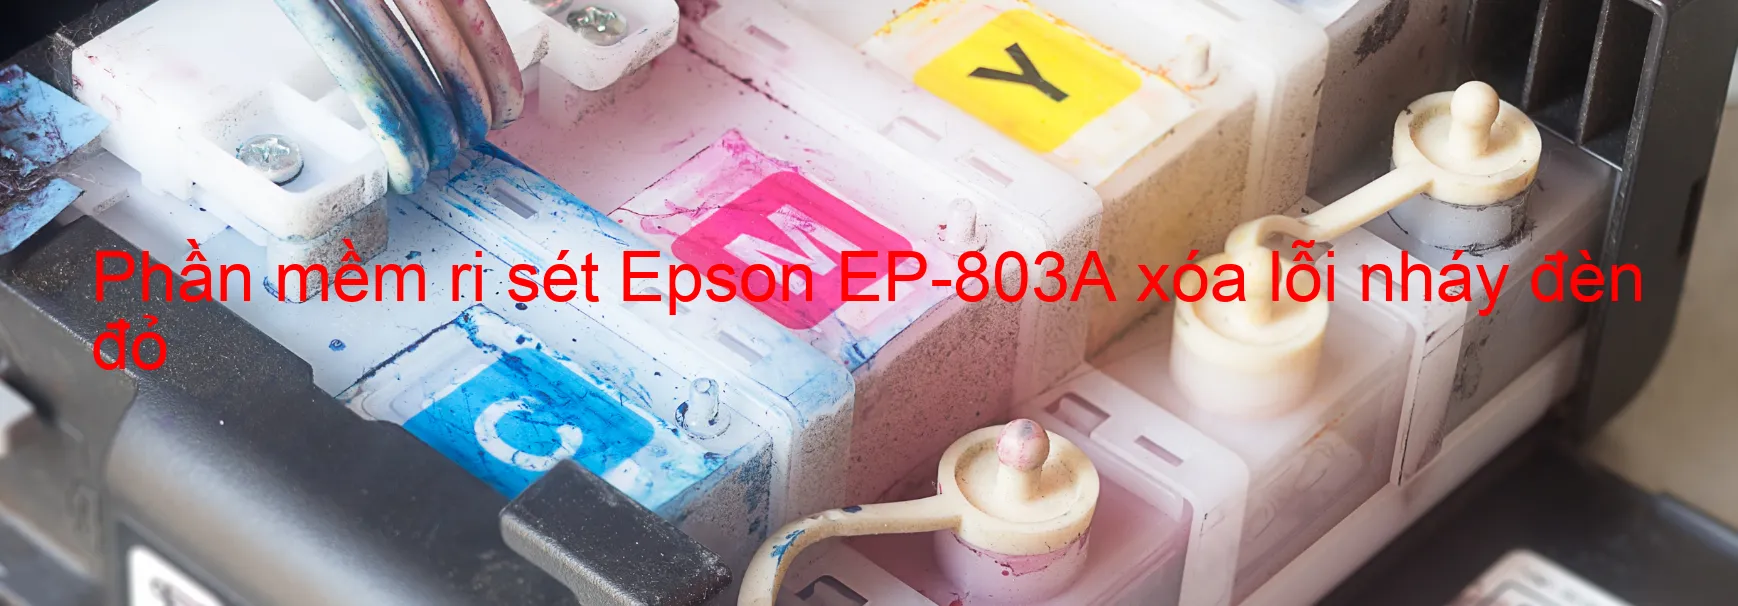 Phần mềm reset Epson EP-803A xóa lỗi nháy đèn đỏ